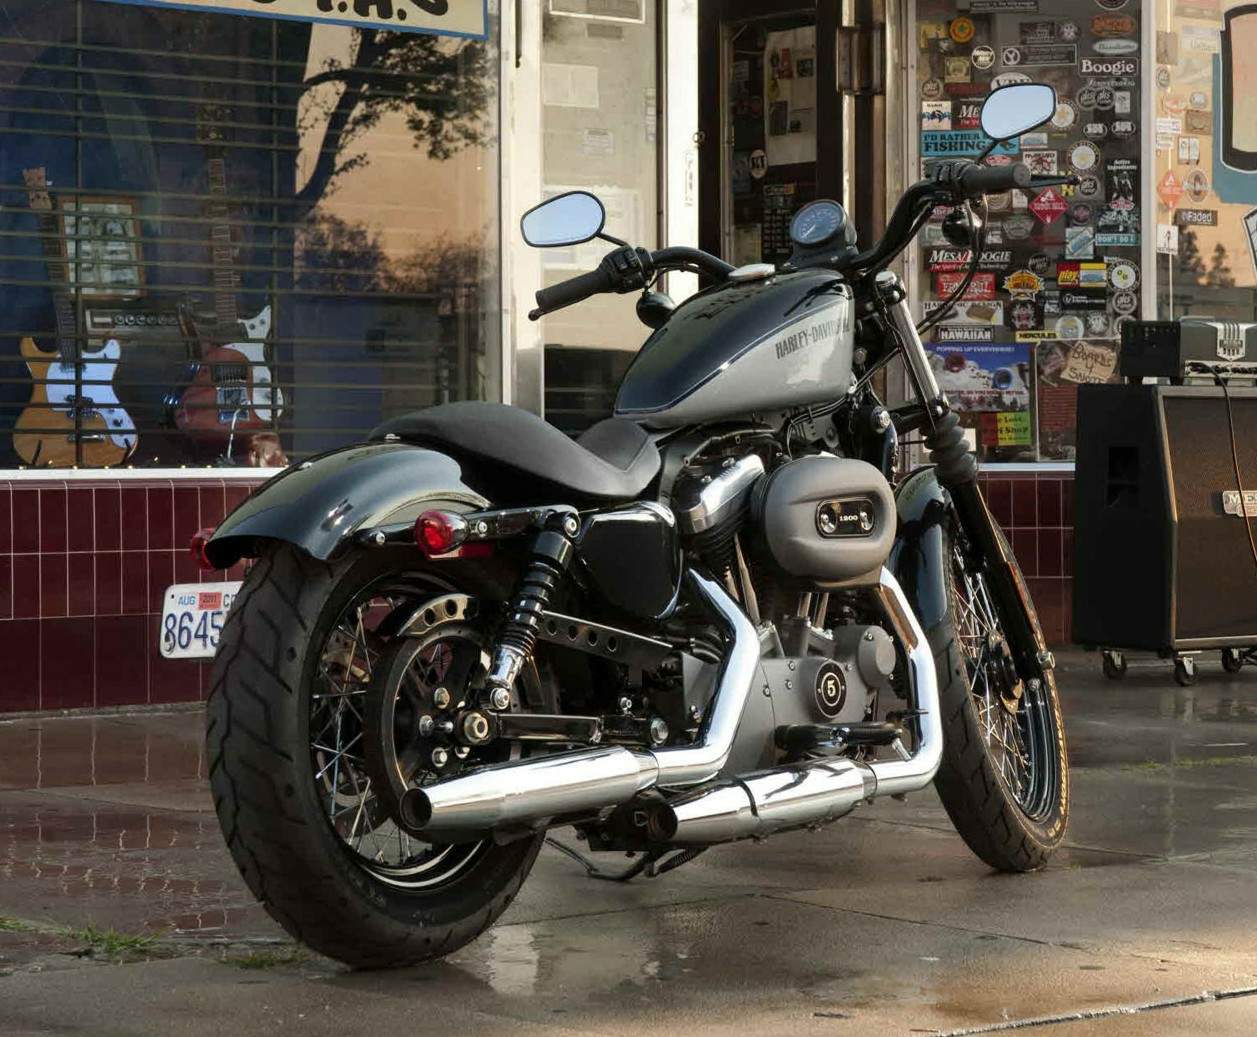 Especificaciones técnicas Harley-Davidson Harley Davidson XL 1200N Nightster (2011-12)